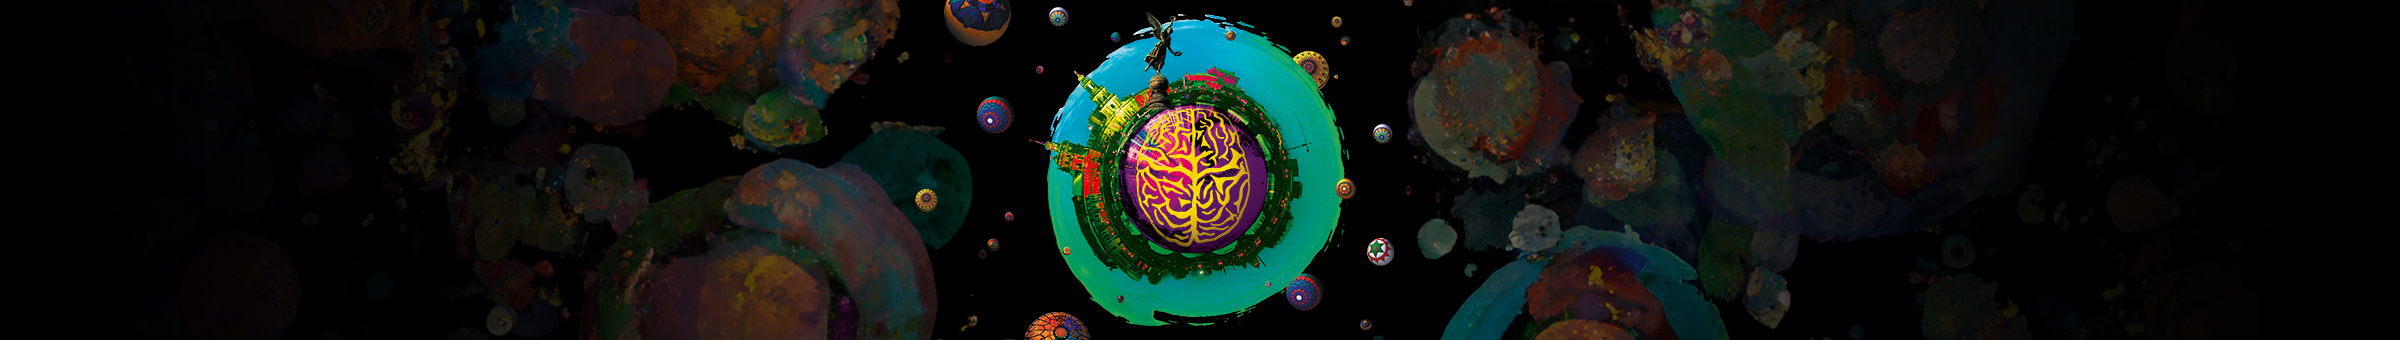 Künstlerische, bunte Darstellung der Dresdner Silhouette mit einem stilisiertem Gehirn in der Mitte